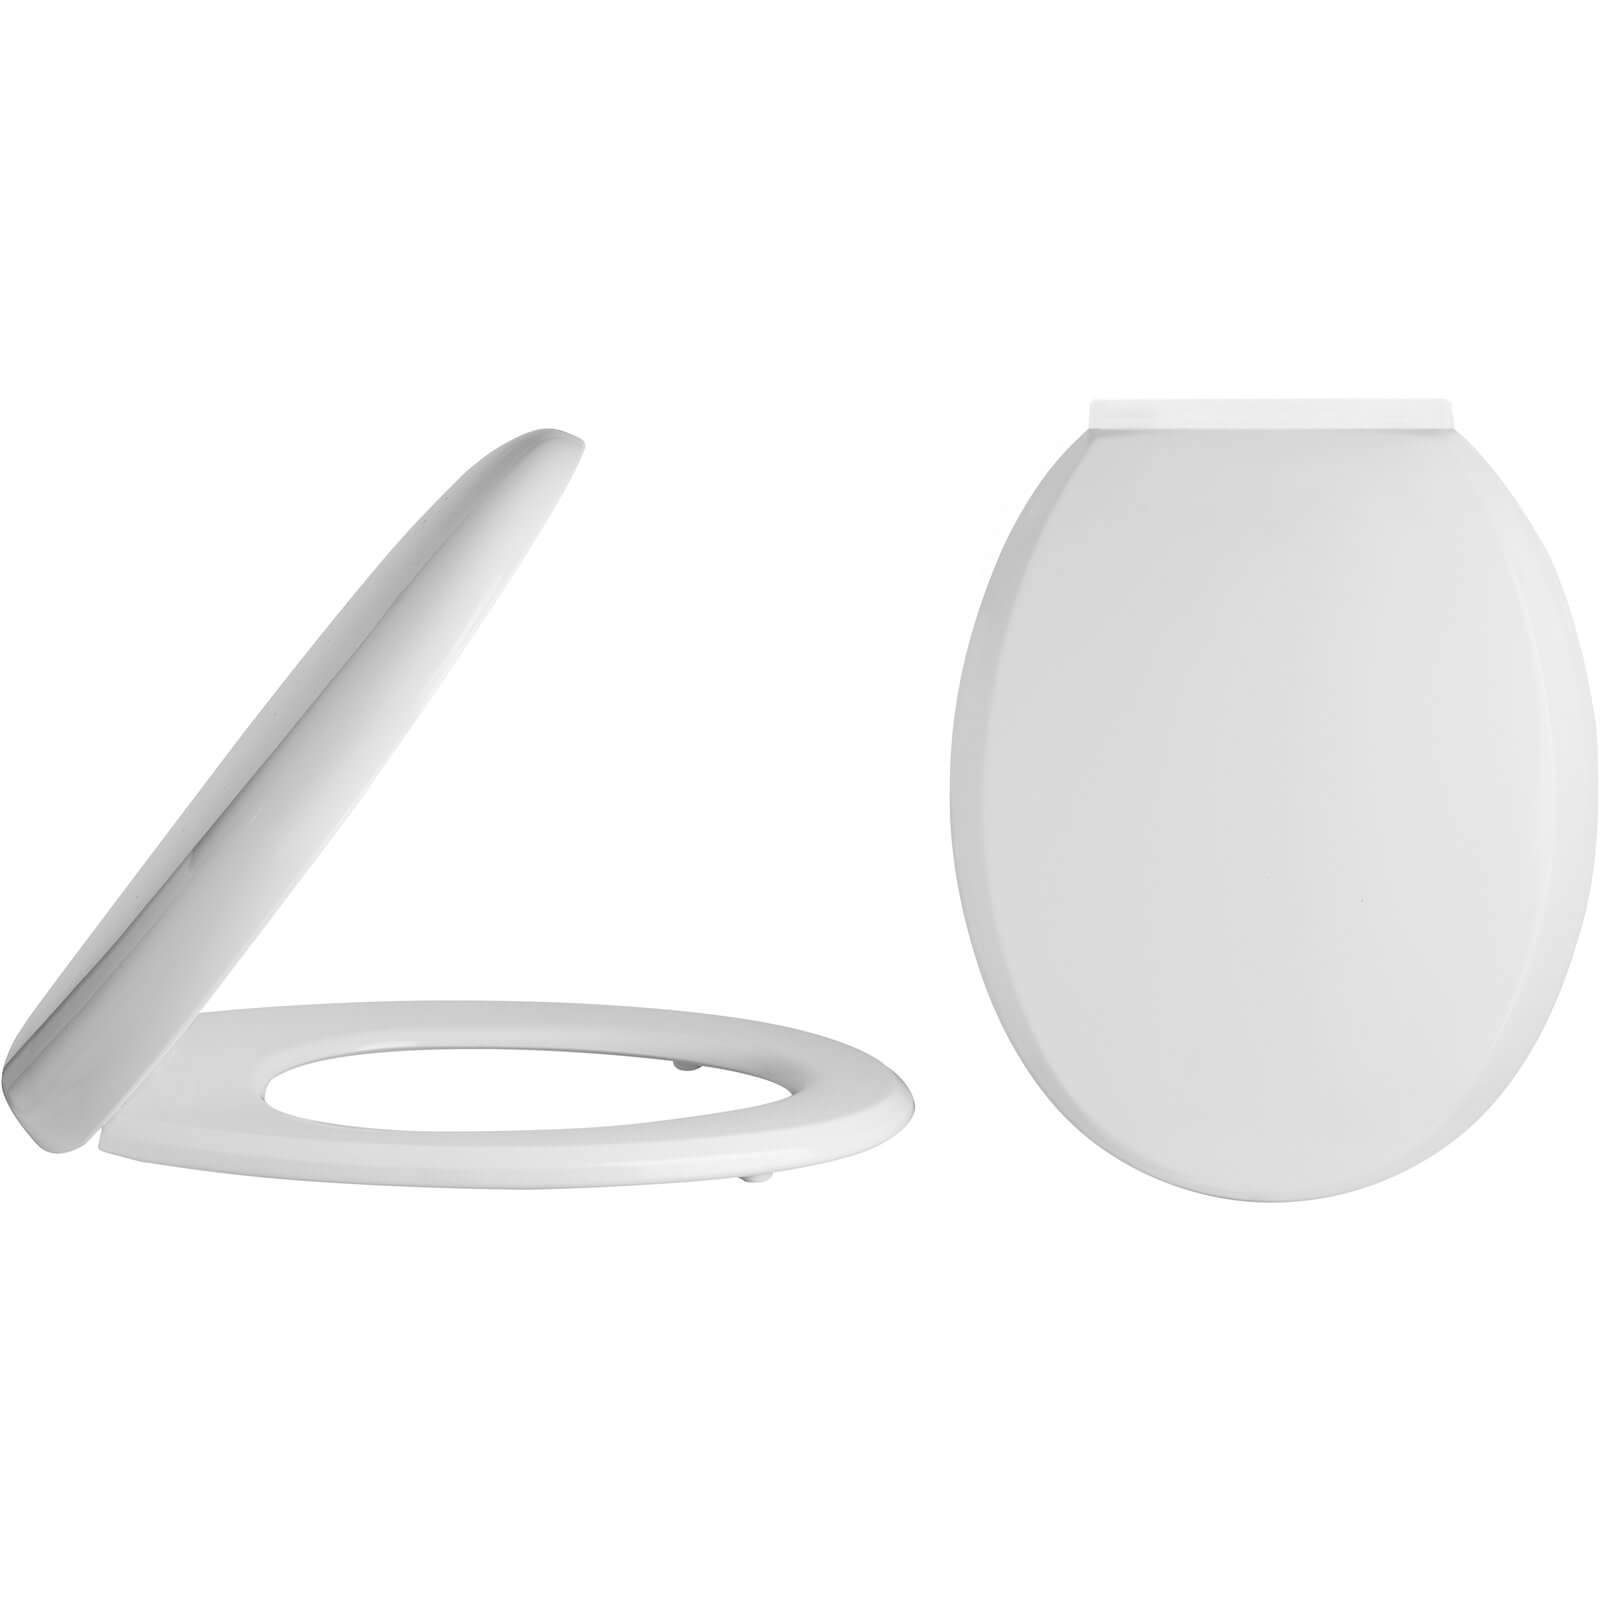 Balterley Standard Round Soft Close Toilet Seat - Top Fix - White